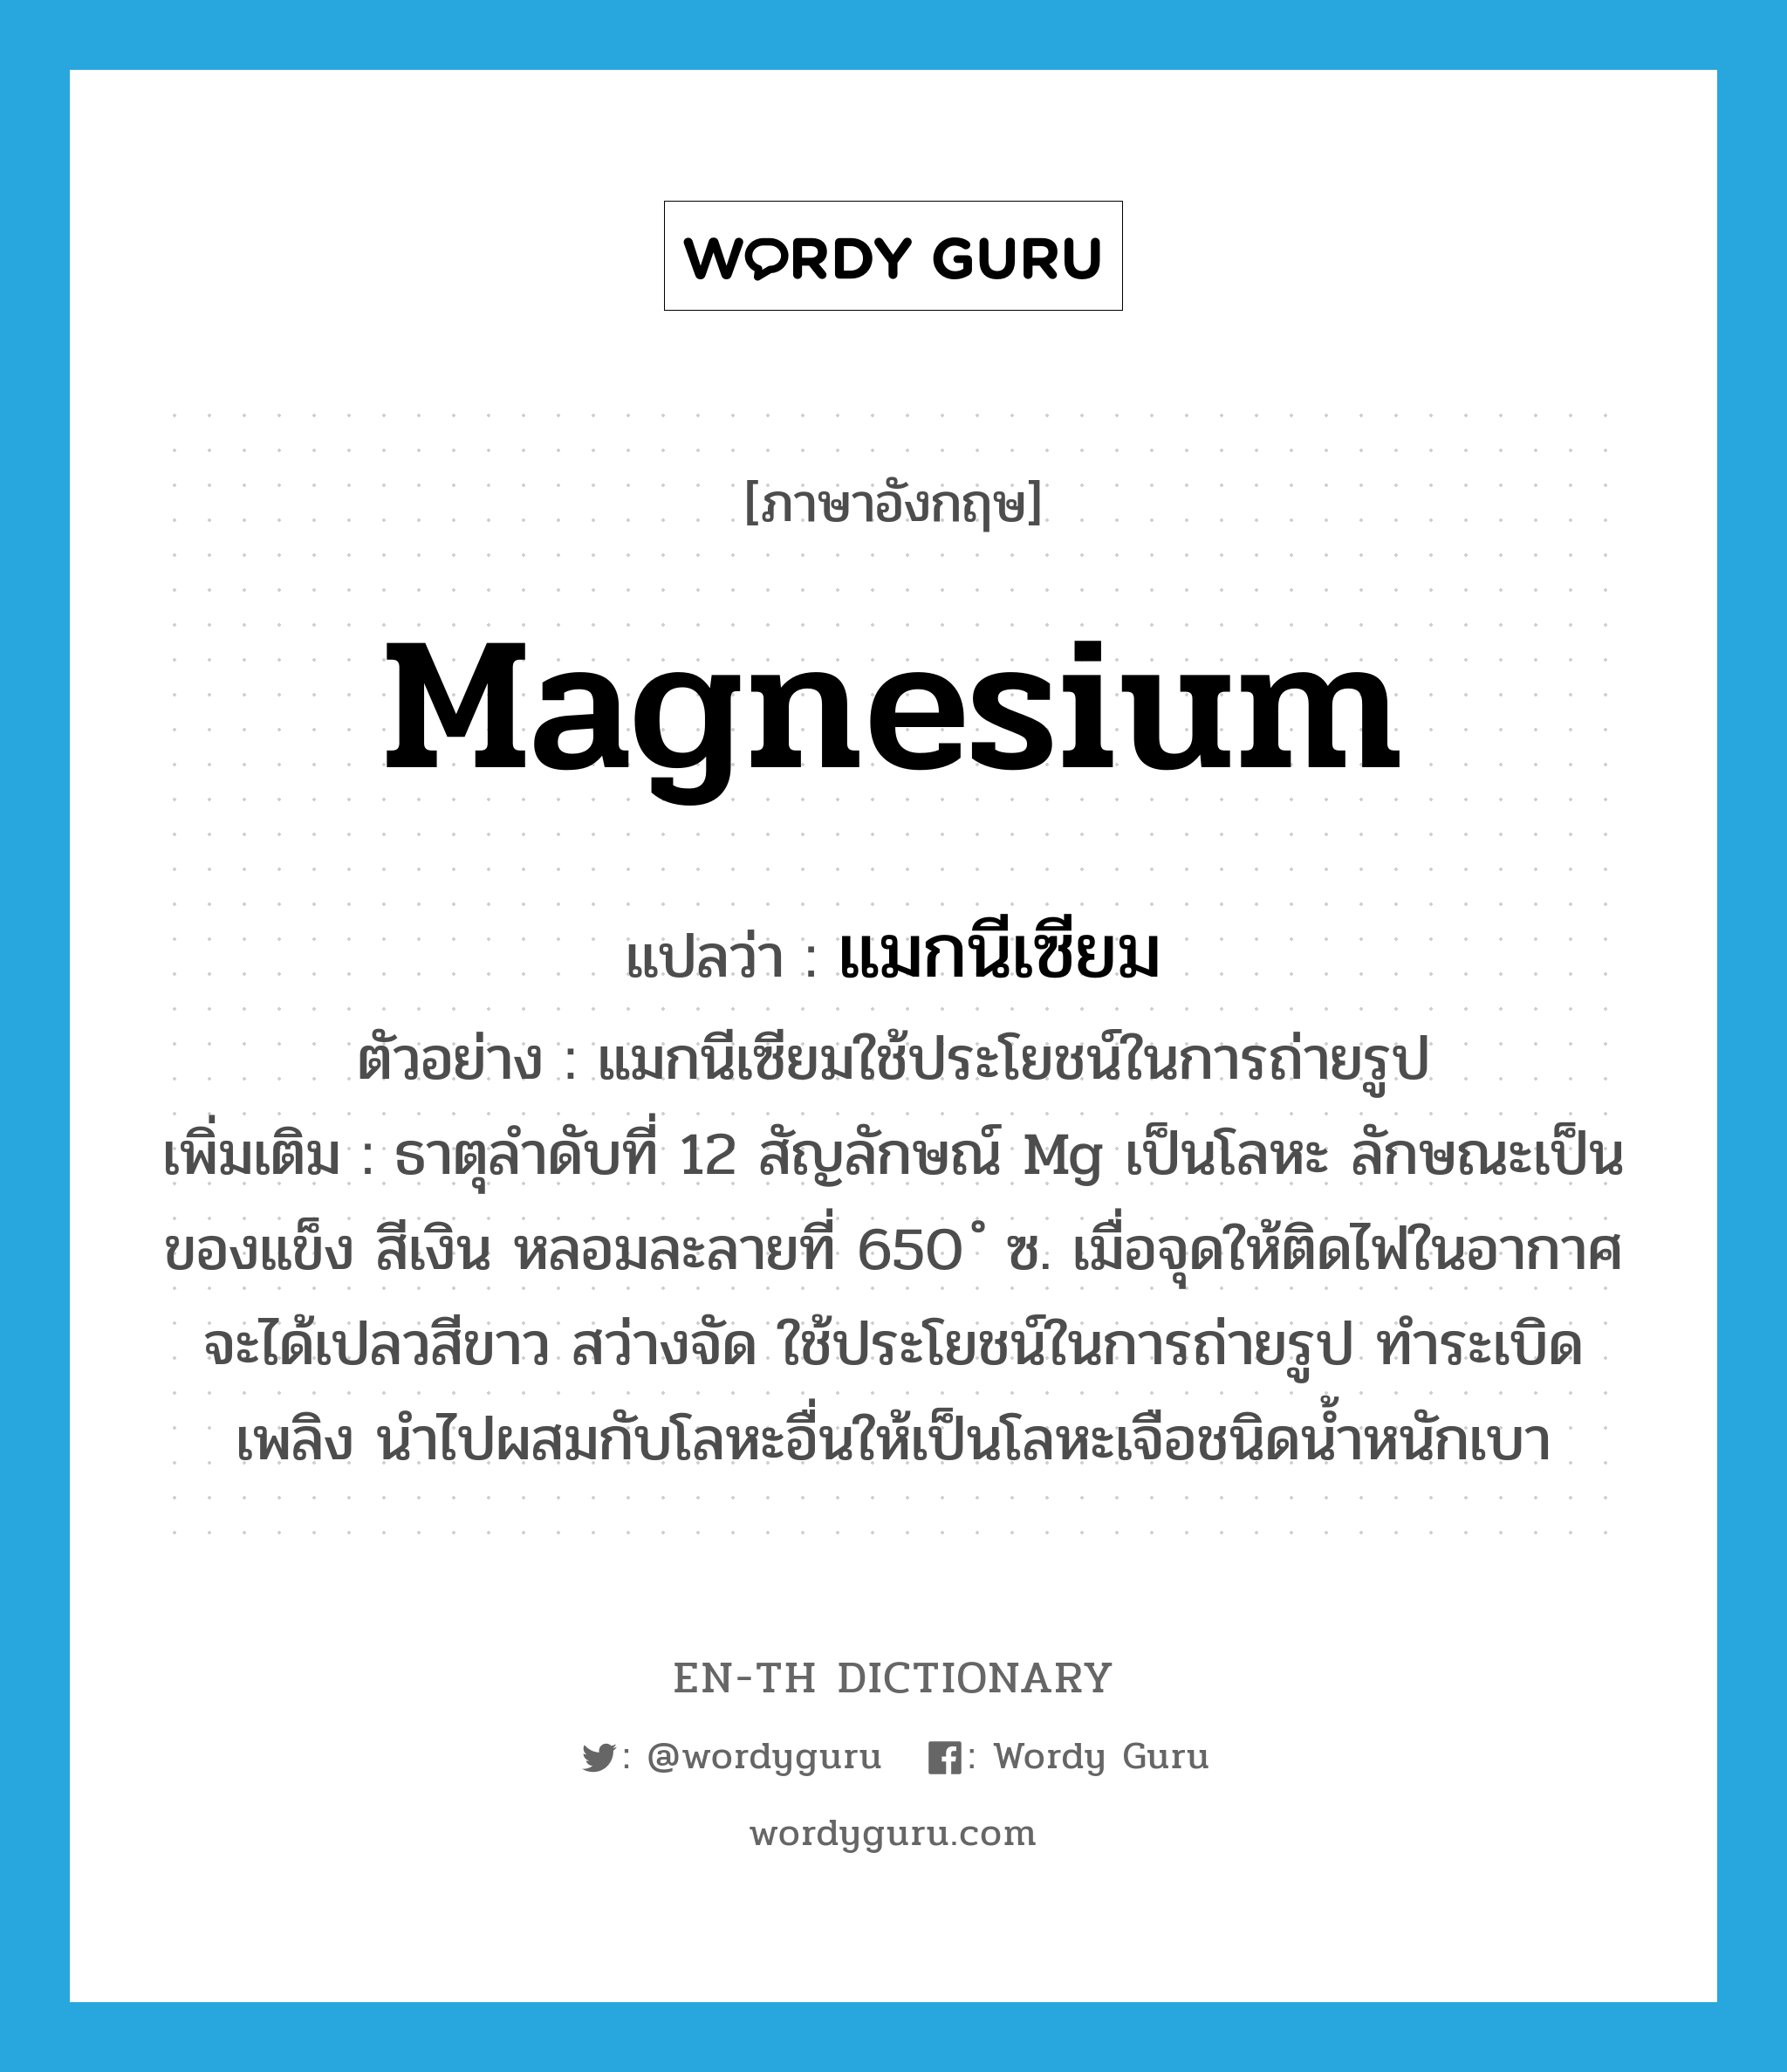 แมกนีเซียม ภาษาอังกฤษ?, คำศัพท์ภาษาอังกฤษ แมกนีเซียม แปลว่า magnesium ประเภท N ตัวอย่าง แมกนีเซียมใช้ประโยชน์ในการถ่ายรูป เพิ่มเติม ธาตุลำดับที่ 12 สัญลักษณ์ Mg เป็นโลหะ ลักษณะเป็นของแข็ง สีเงิน หลอมละลายที่ 650 ํ ซ. เมื่อจุดให้ติดไฟในอากาศจะได้เปลวสีขาว สว่างจัด ใช้ประโยชน์ในการถ่ายรูป ทำระเบิดเพลิง นำไปผสมกับโลหะอื่นให้เป็นโลหะเจือชนิดน้ำหนักเบา หมวด N